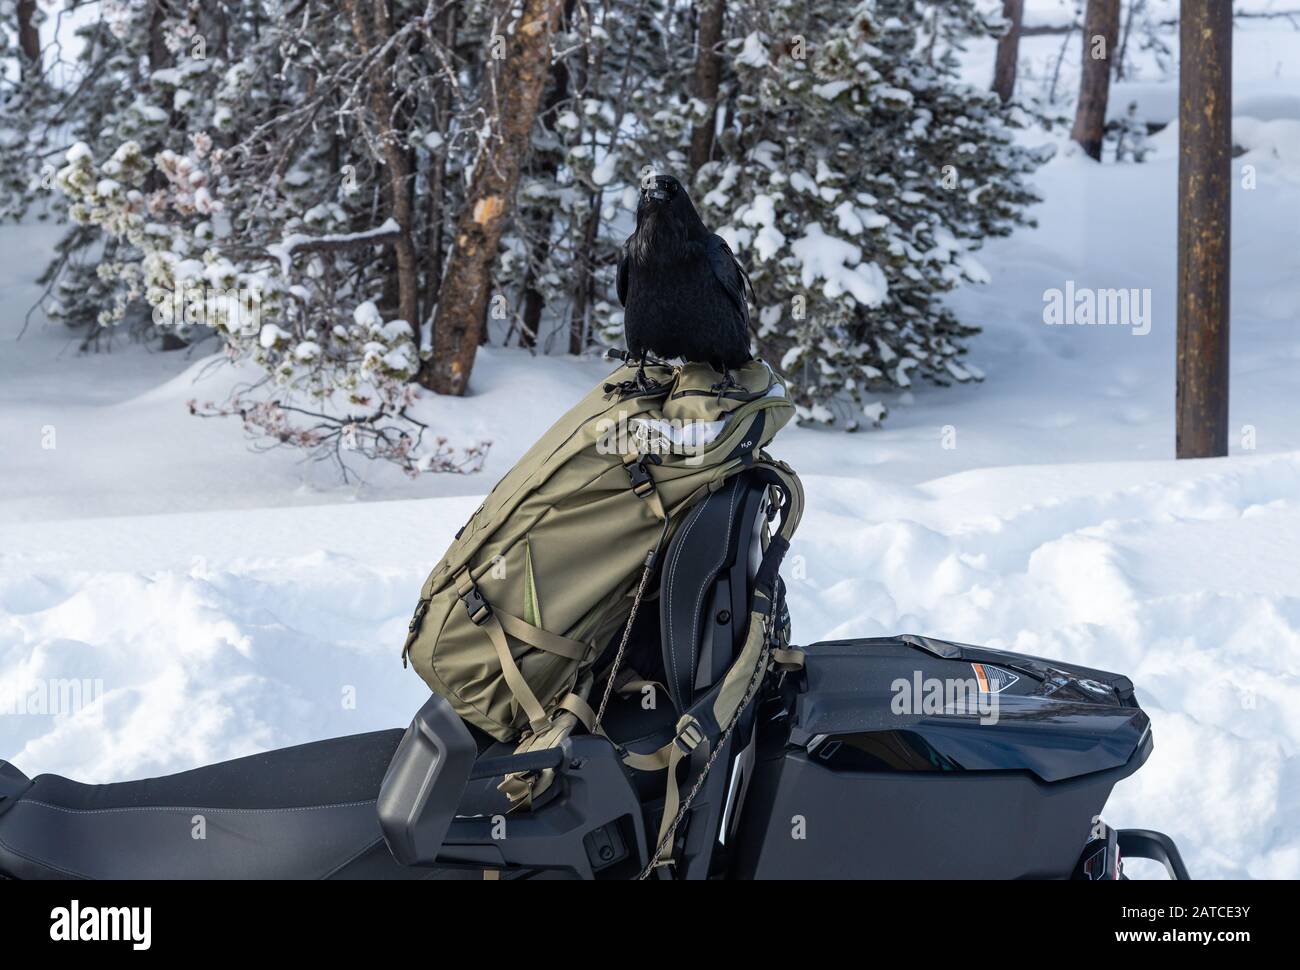 Un Corbeau commun (Corvus corax) tente d'ouvrir un sac à dos pour chercher de la nourriture. Yellowstone National Park, Wyoming, États-Unis Banque D'Images